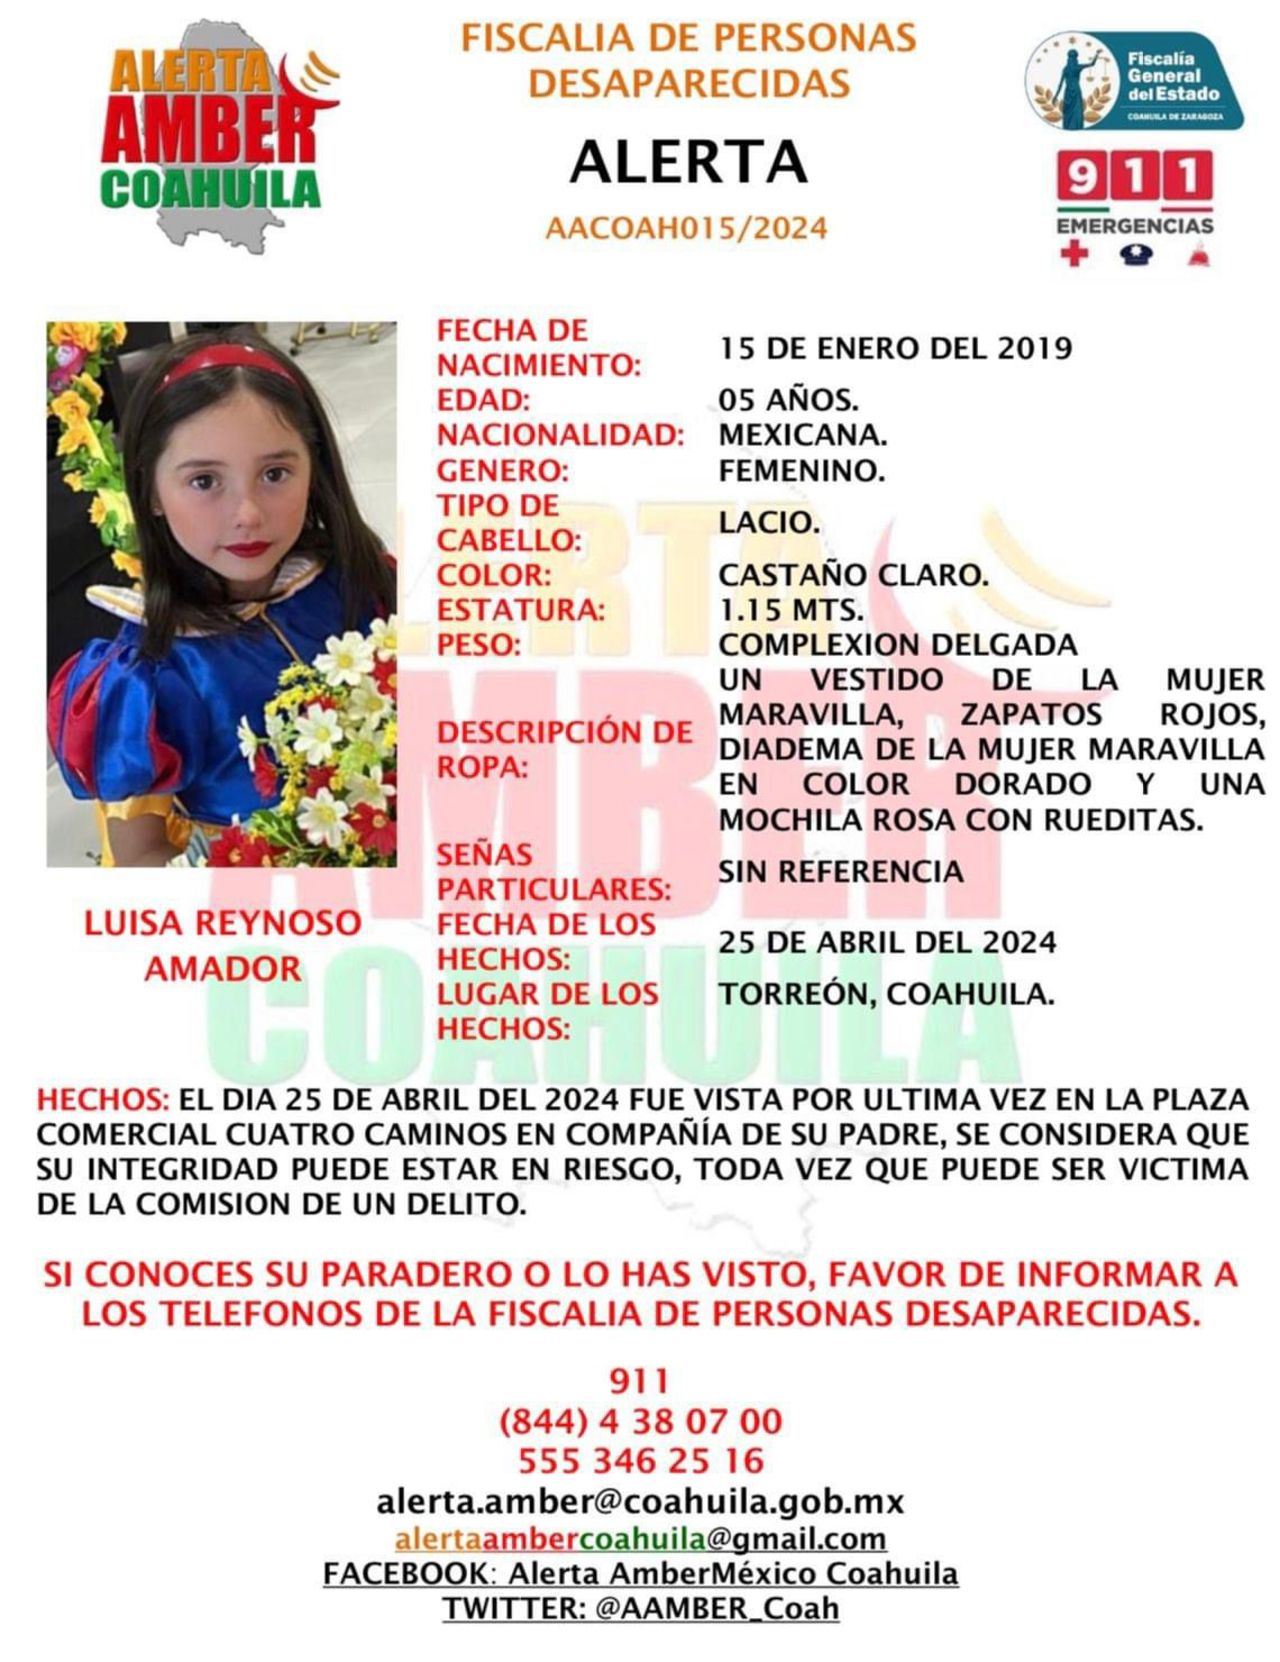 La Fiscalía de Personas Desaparecidas en Coahuila puso a disposición el número 844-438-07-00 para cualquier información.